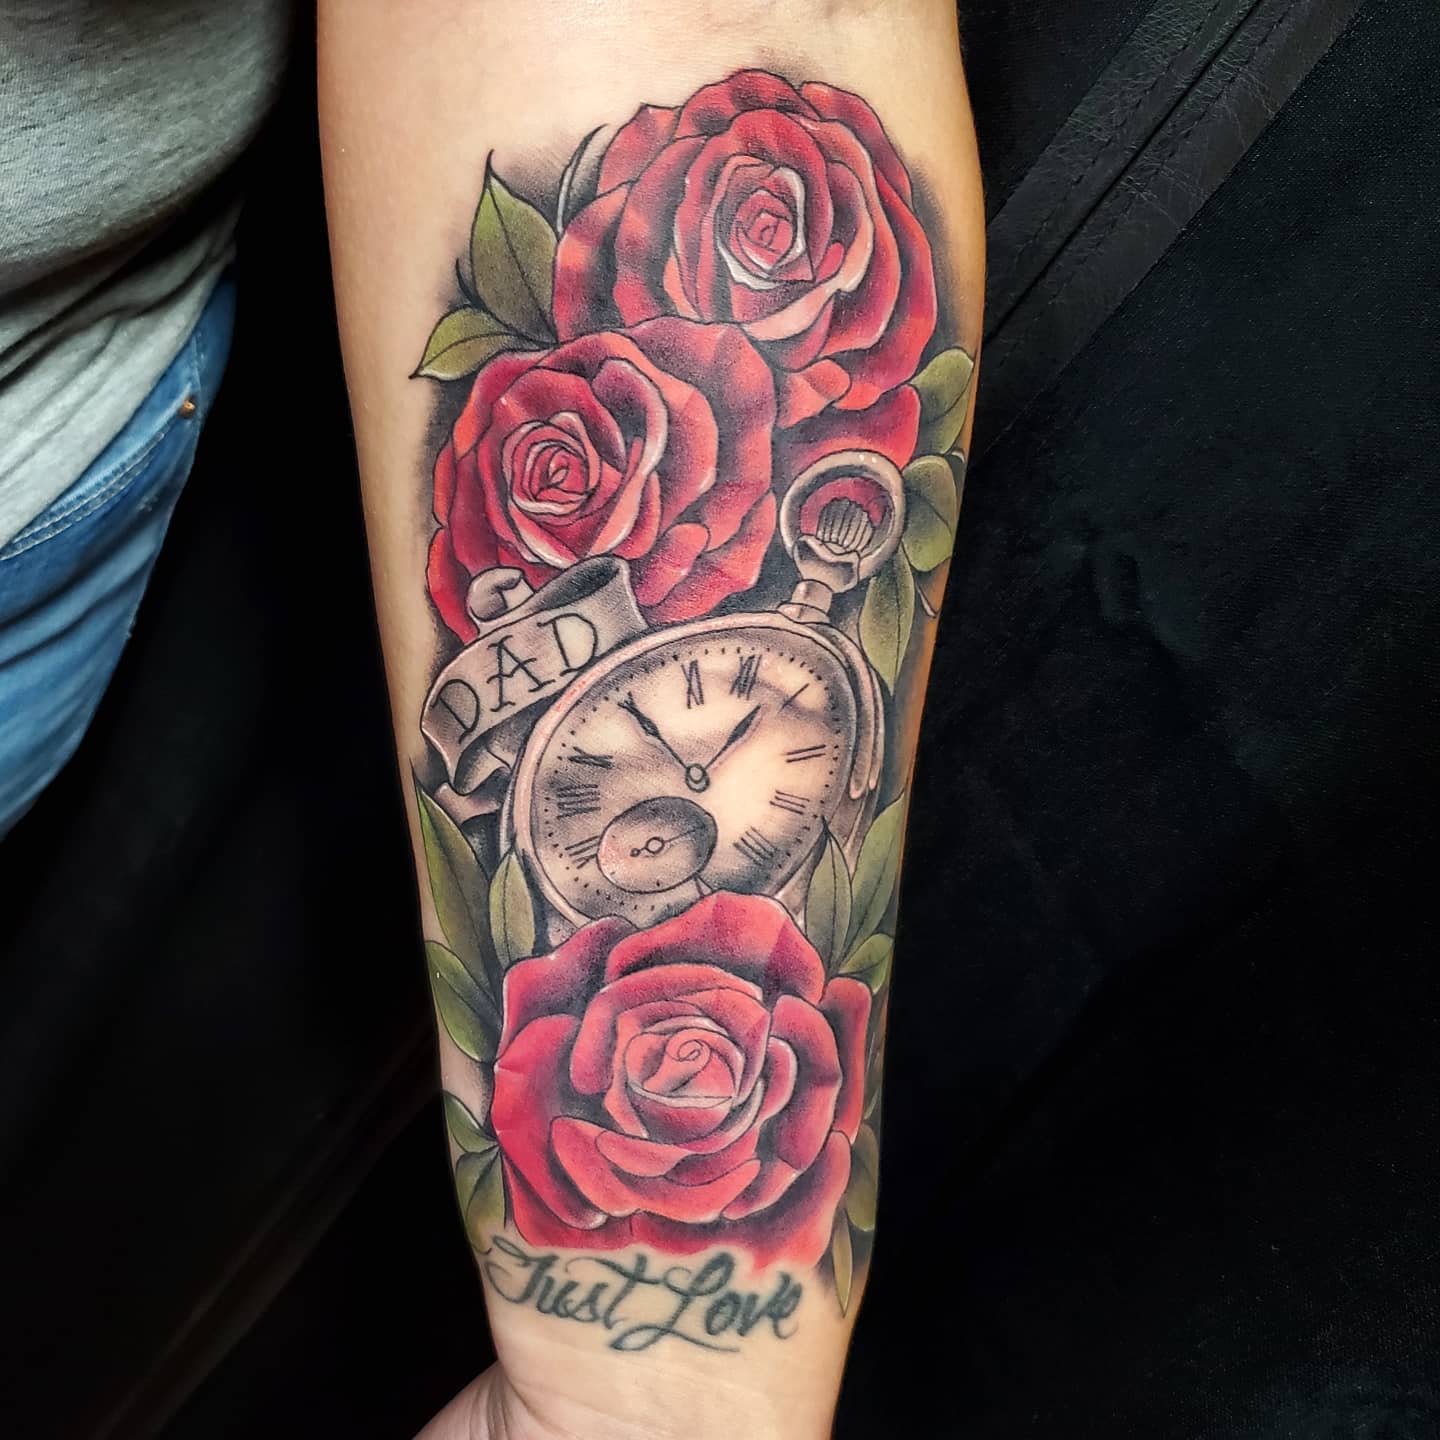 Asher Sofia on Twitter My first tattoo RIP Grandma  httpstcoAsDaVYtQPj  Twitter